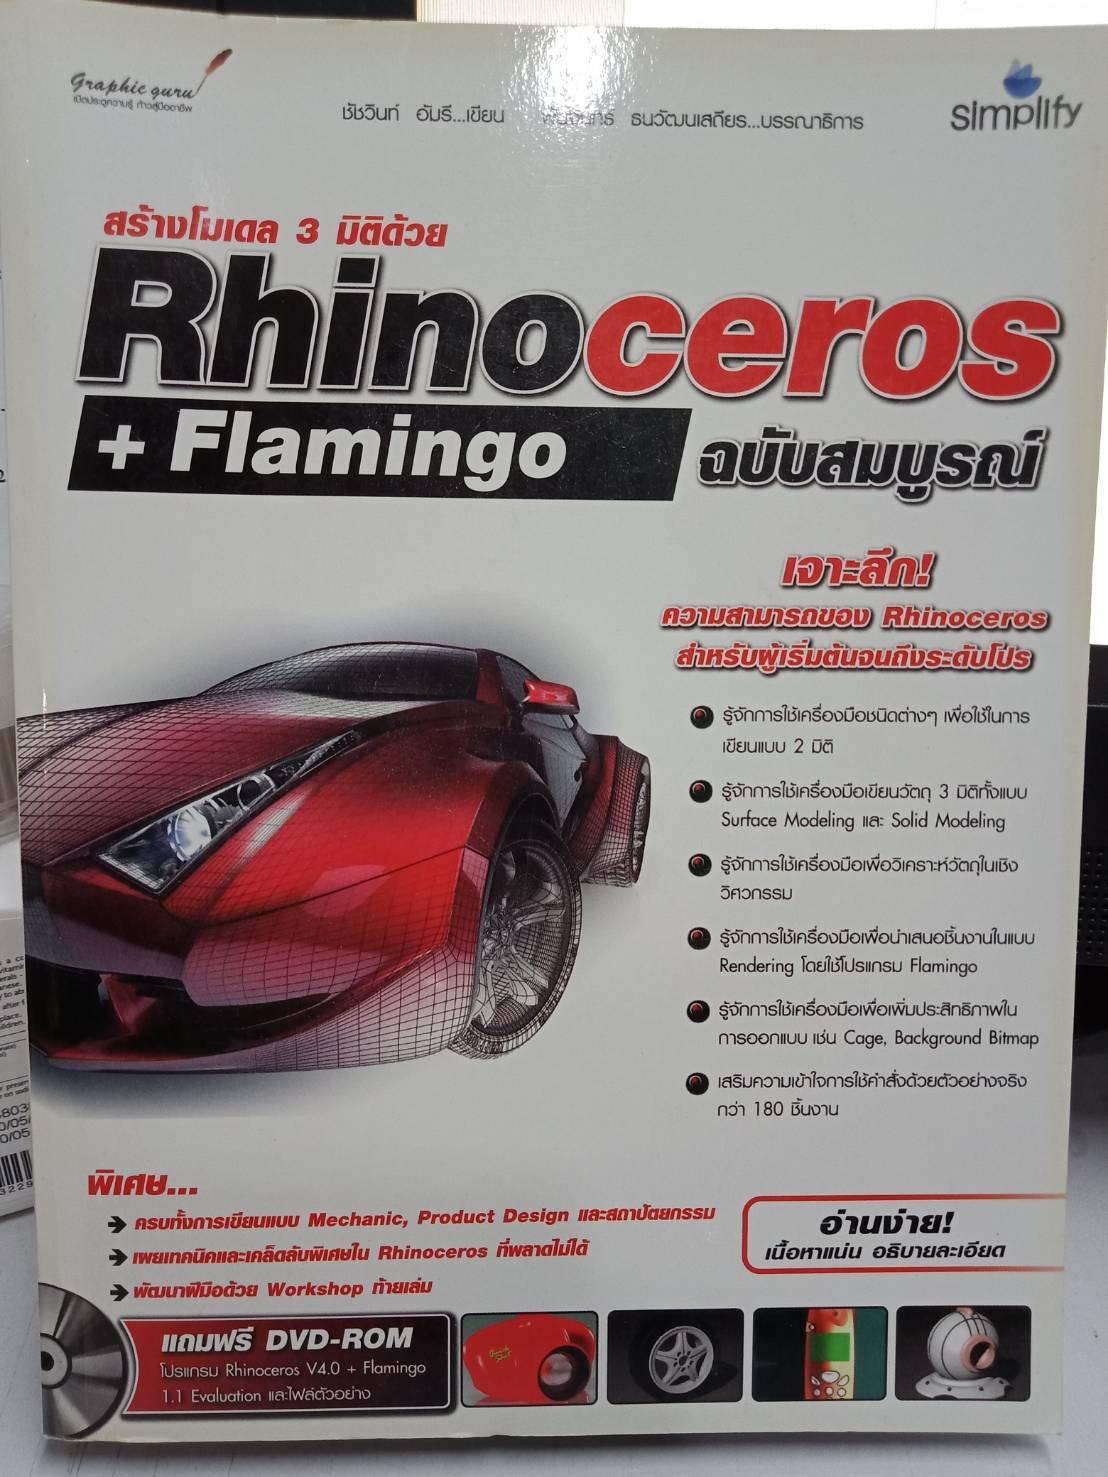 สร้างโมเดล 3 มิติด้วย Rhinoceros + Flamingo ฉบับสมบูรณ์ +DVD-Rom